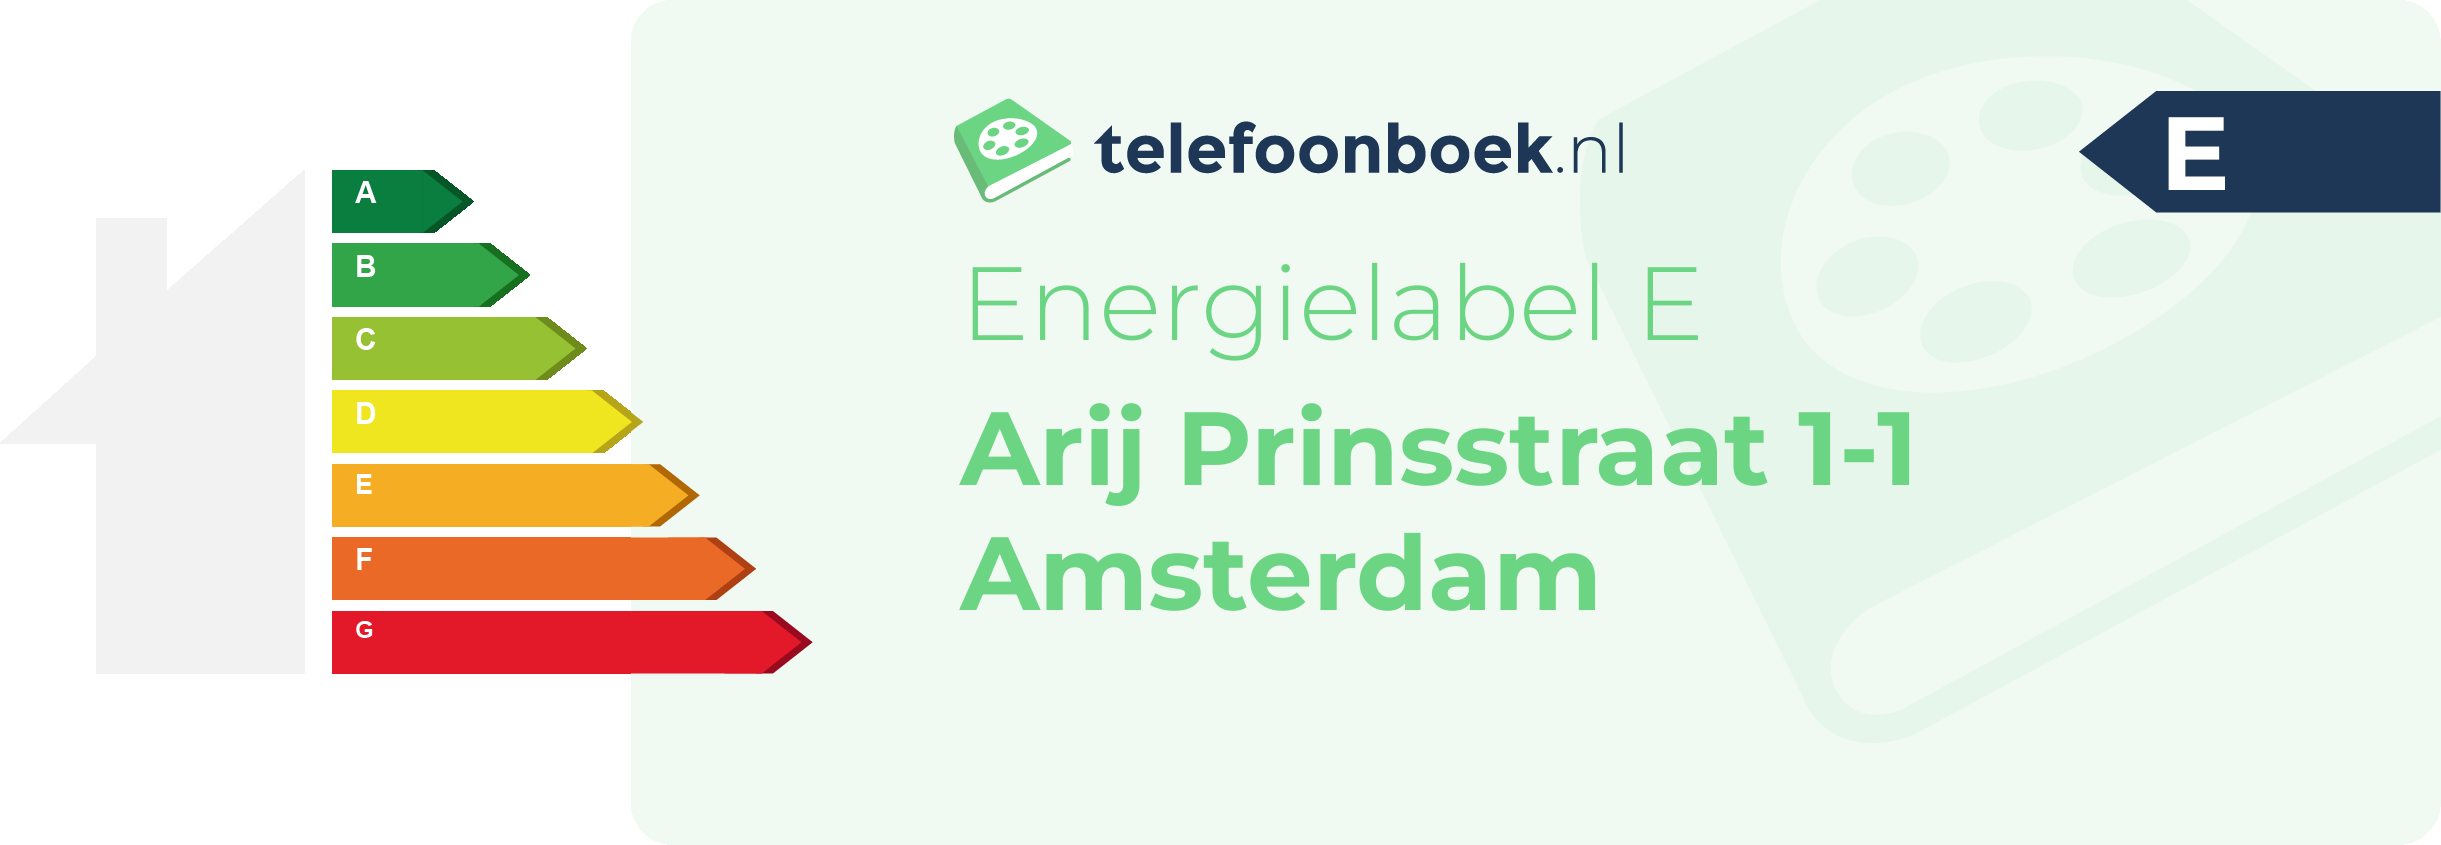 Energielabel Arij Prinsstraat 1-1 Amsterdam